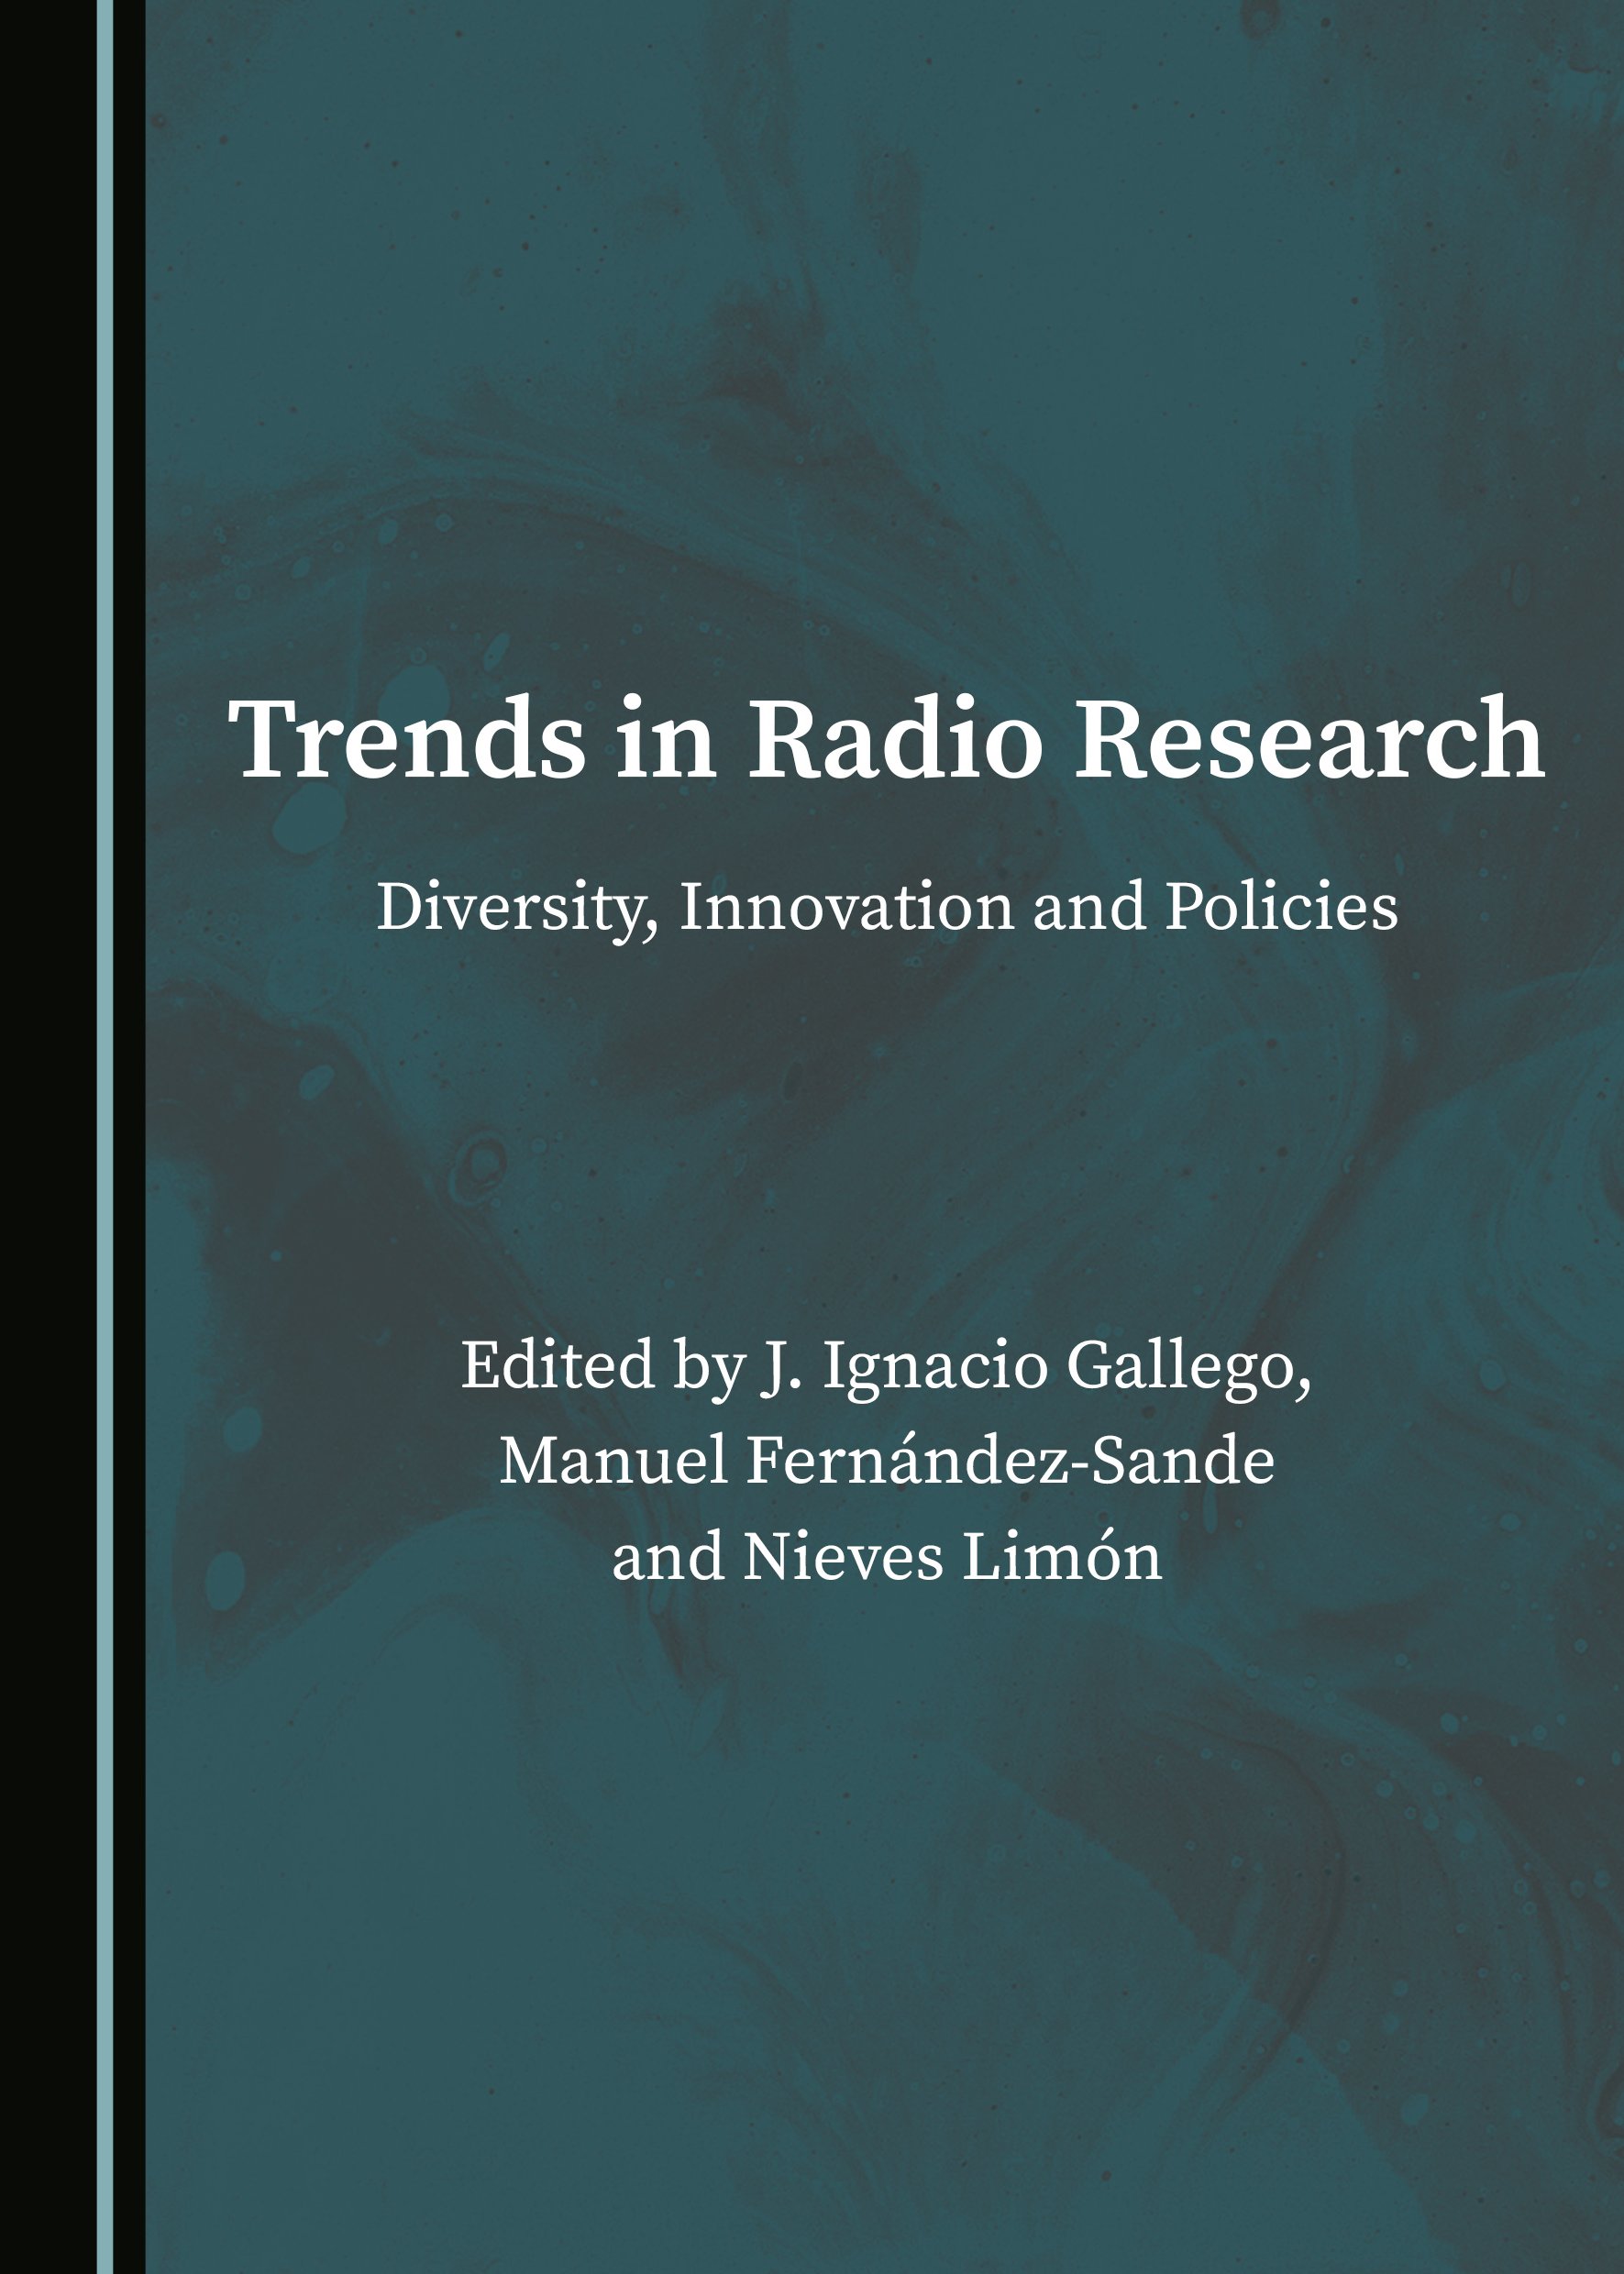 Imagen de portada del libro Trends in radio research